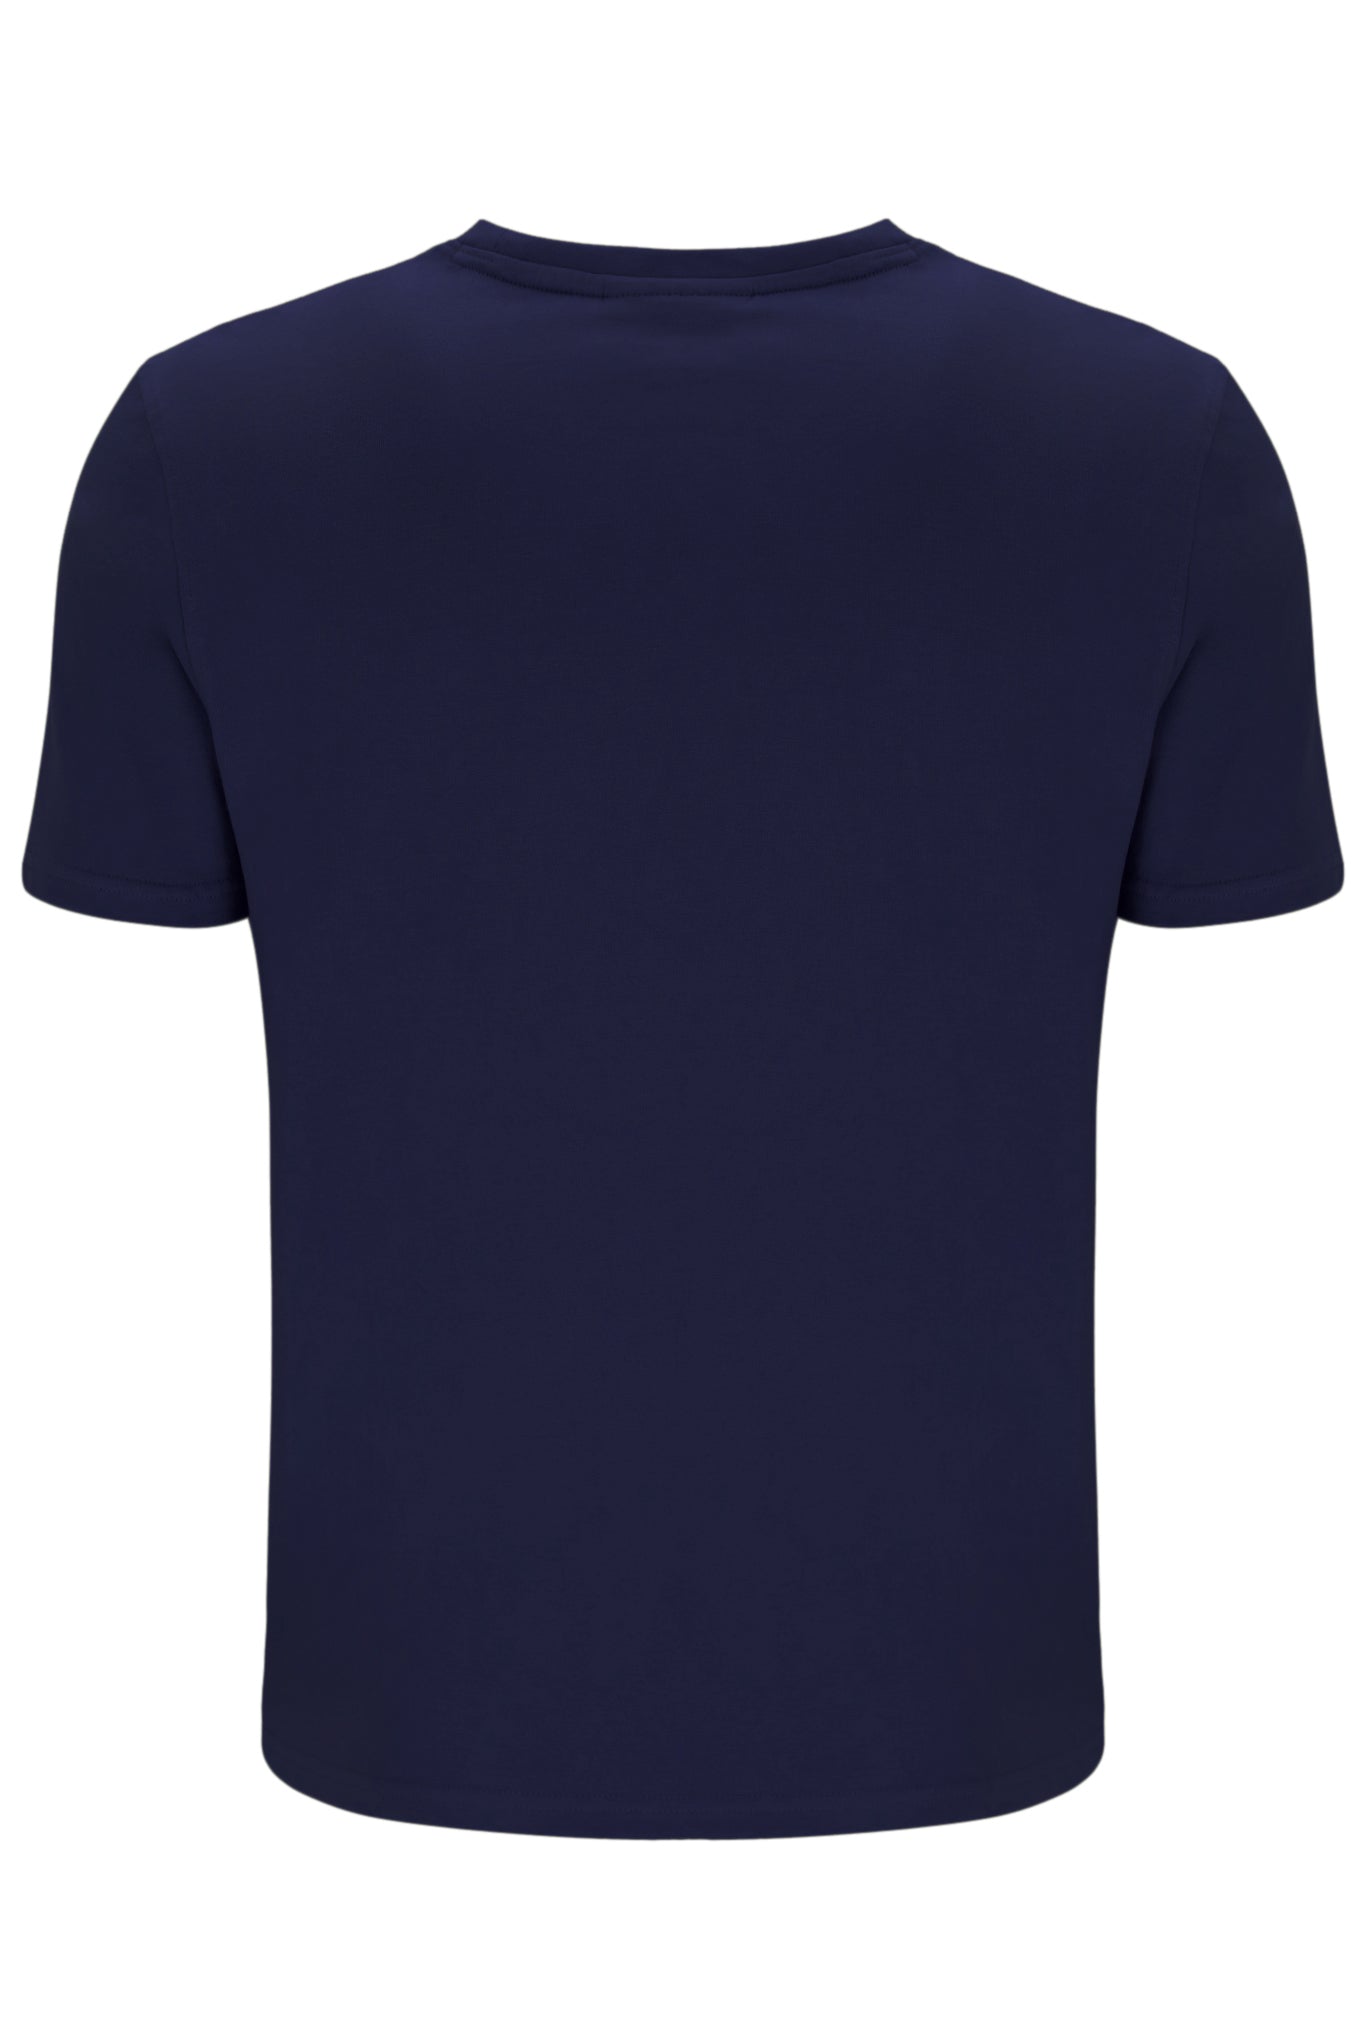 FILA Sunny Essential T-Shirt - Fila Navy